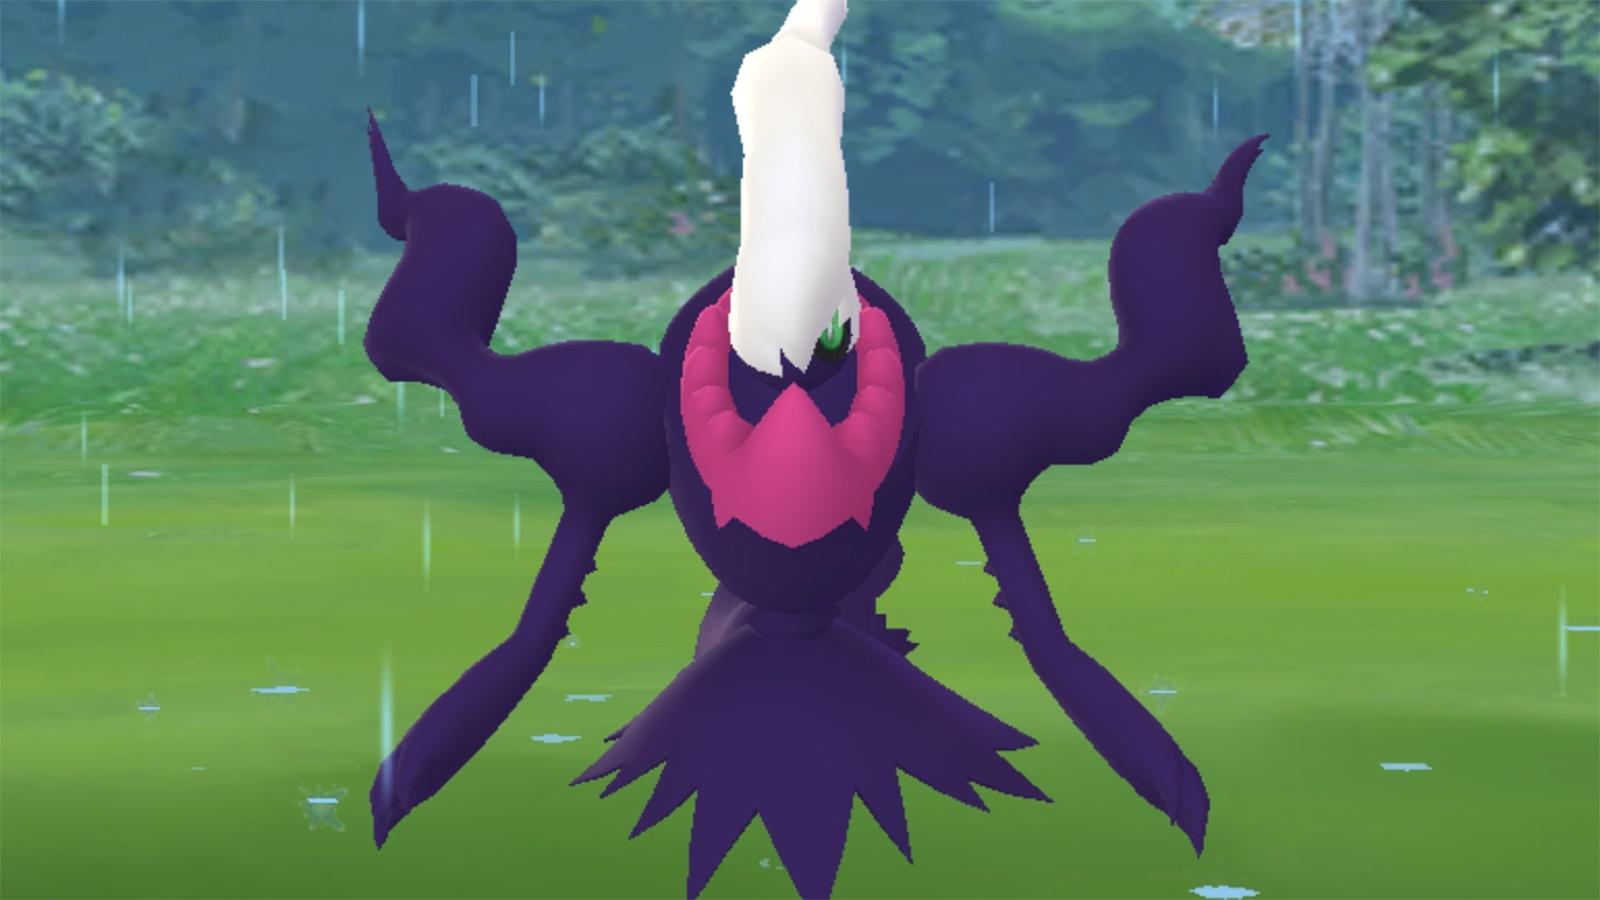 Glänzendes Darkrai in einem Pokémon-Go-Kampf